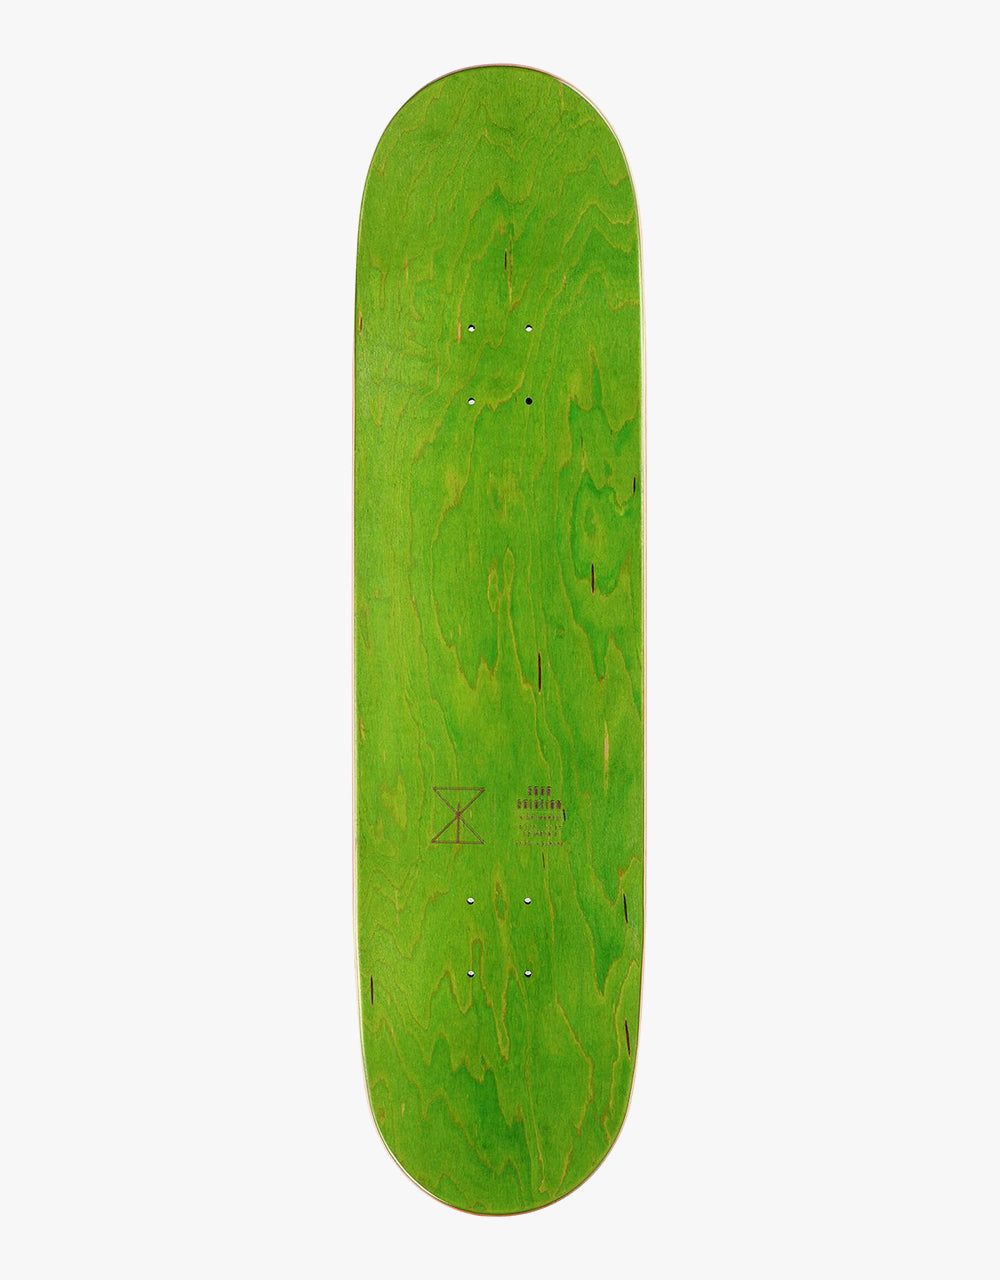 Sour Candon Paint Skateboard Deck - 8.375"